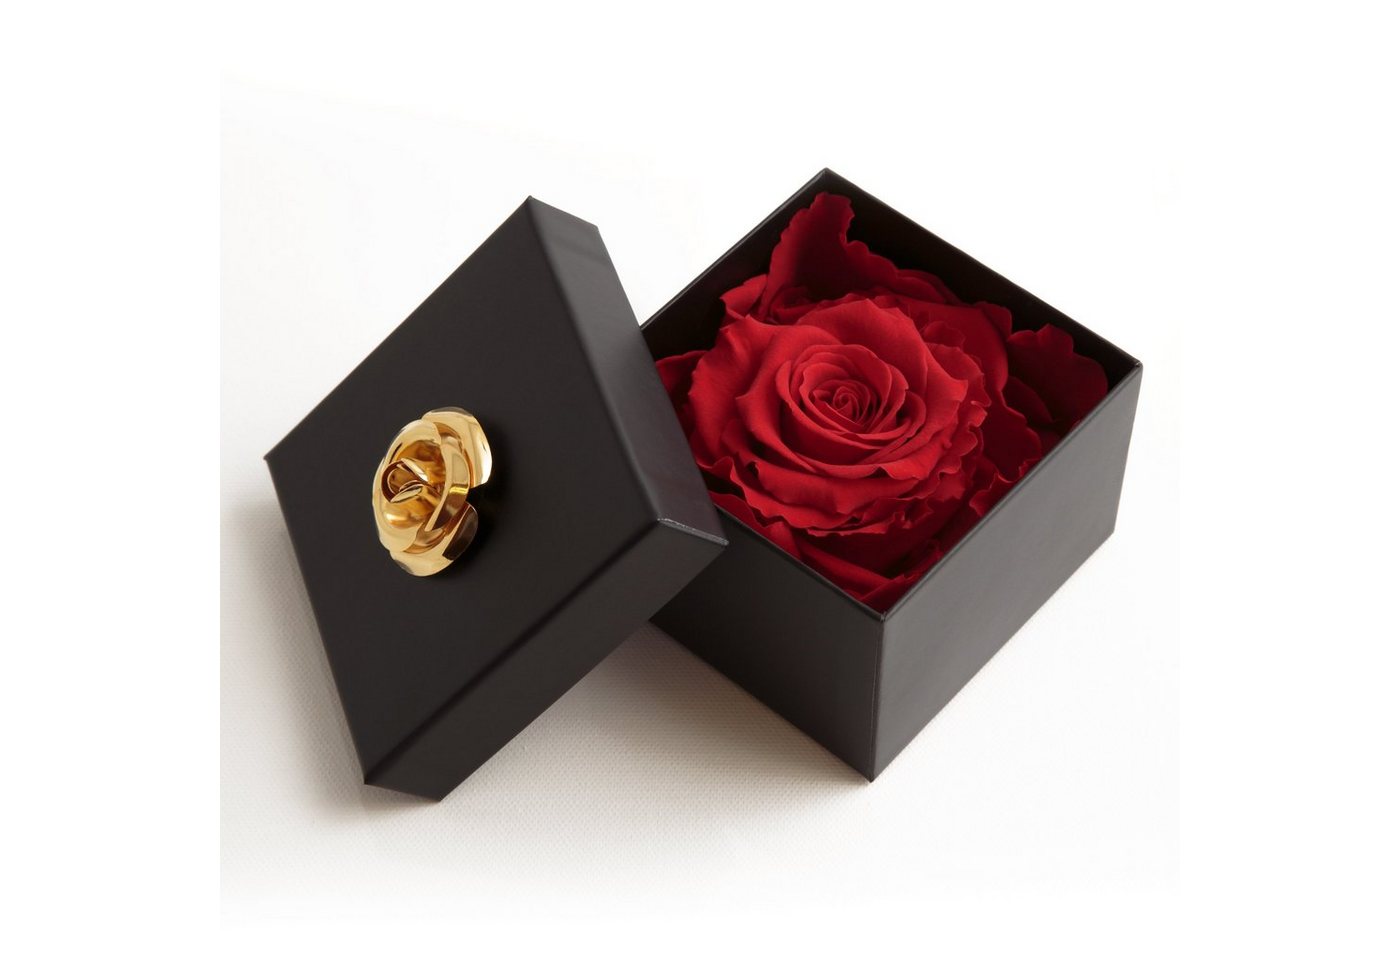 Kunstblume 1 Infinity Rose haltbar 3 Jahre Rose in Box mit Blumendeckel Rose, ROSEMARIE SCHULZ Heidelberg, Höhe 6.5 cm, Echte Rose haltbar bis zu 3 Jahre von ROSEMARIE SCHULZ Heidelberg